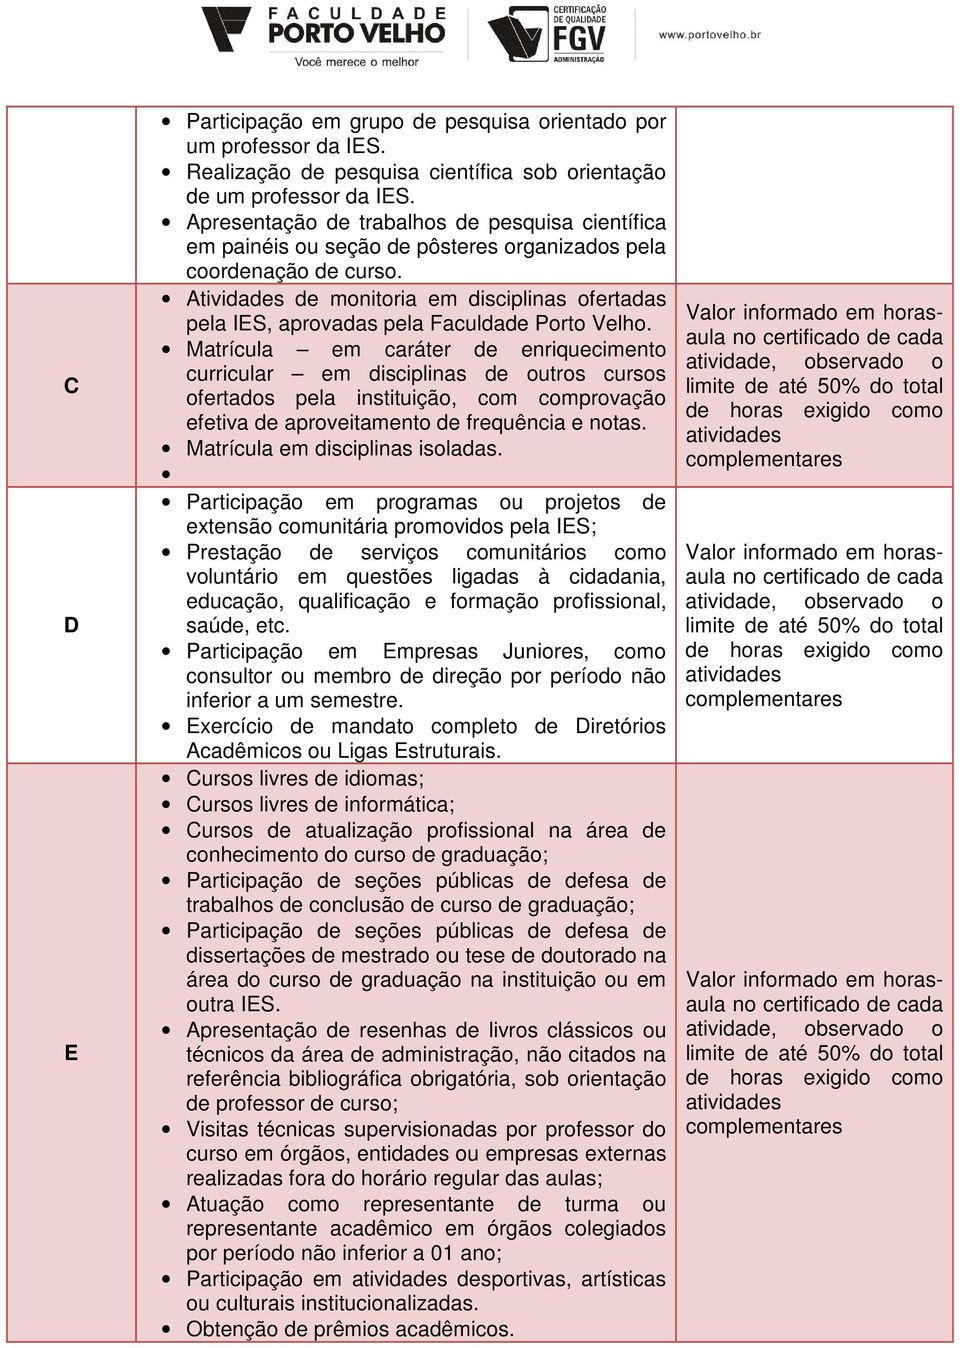 Atividades de monitoria em disciplinas ofertadas pela IES, aprovadas pela Faculdade Porto Velho.